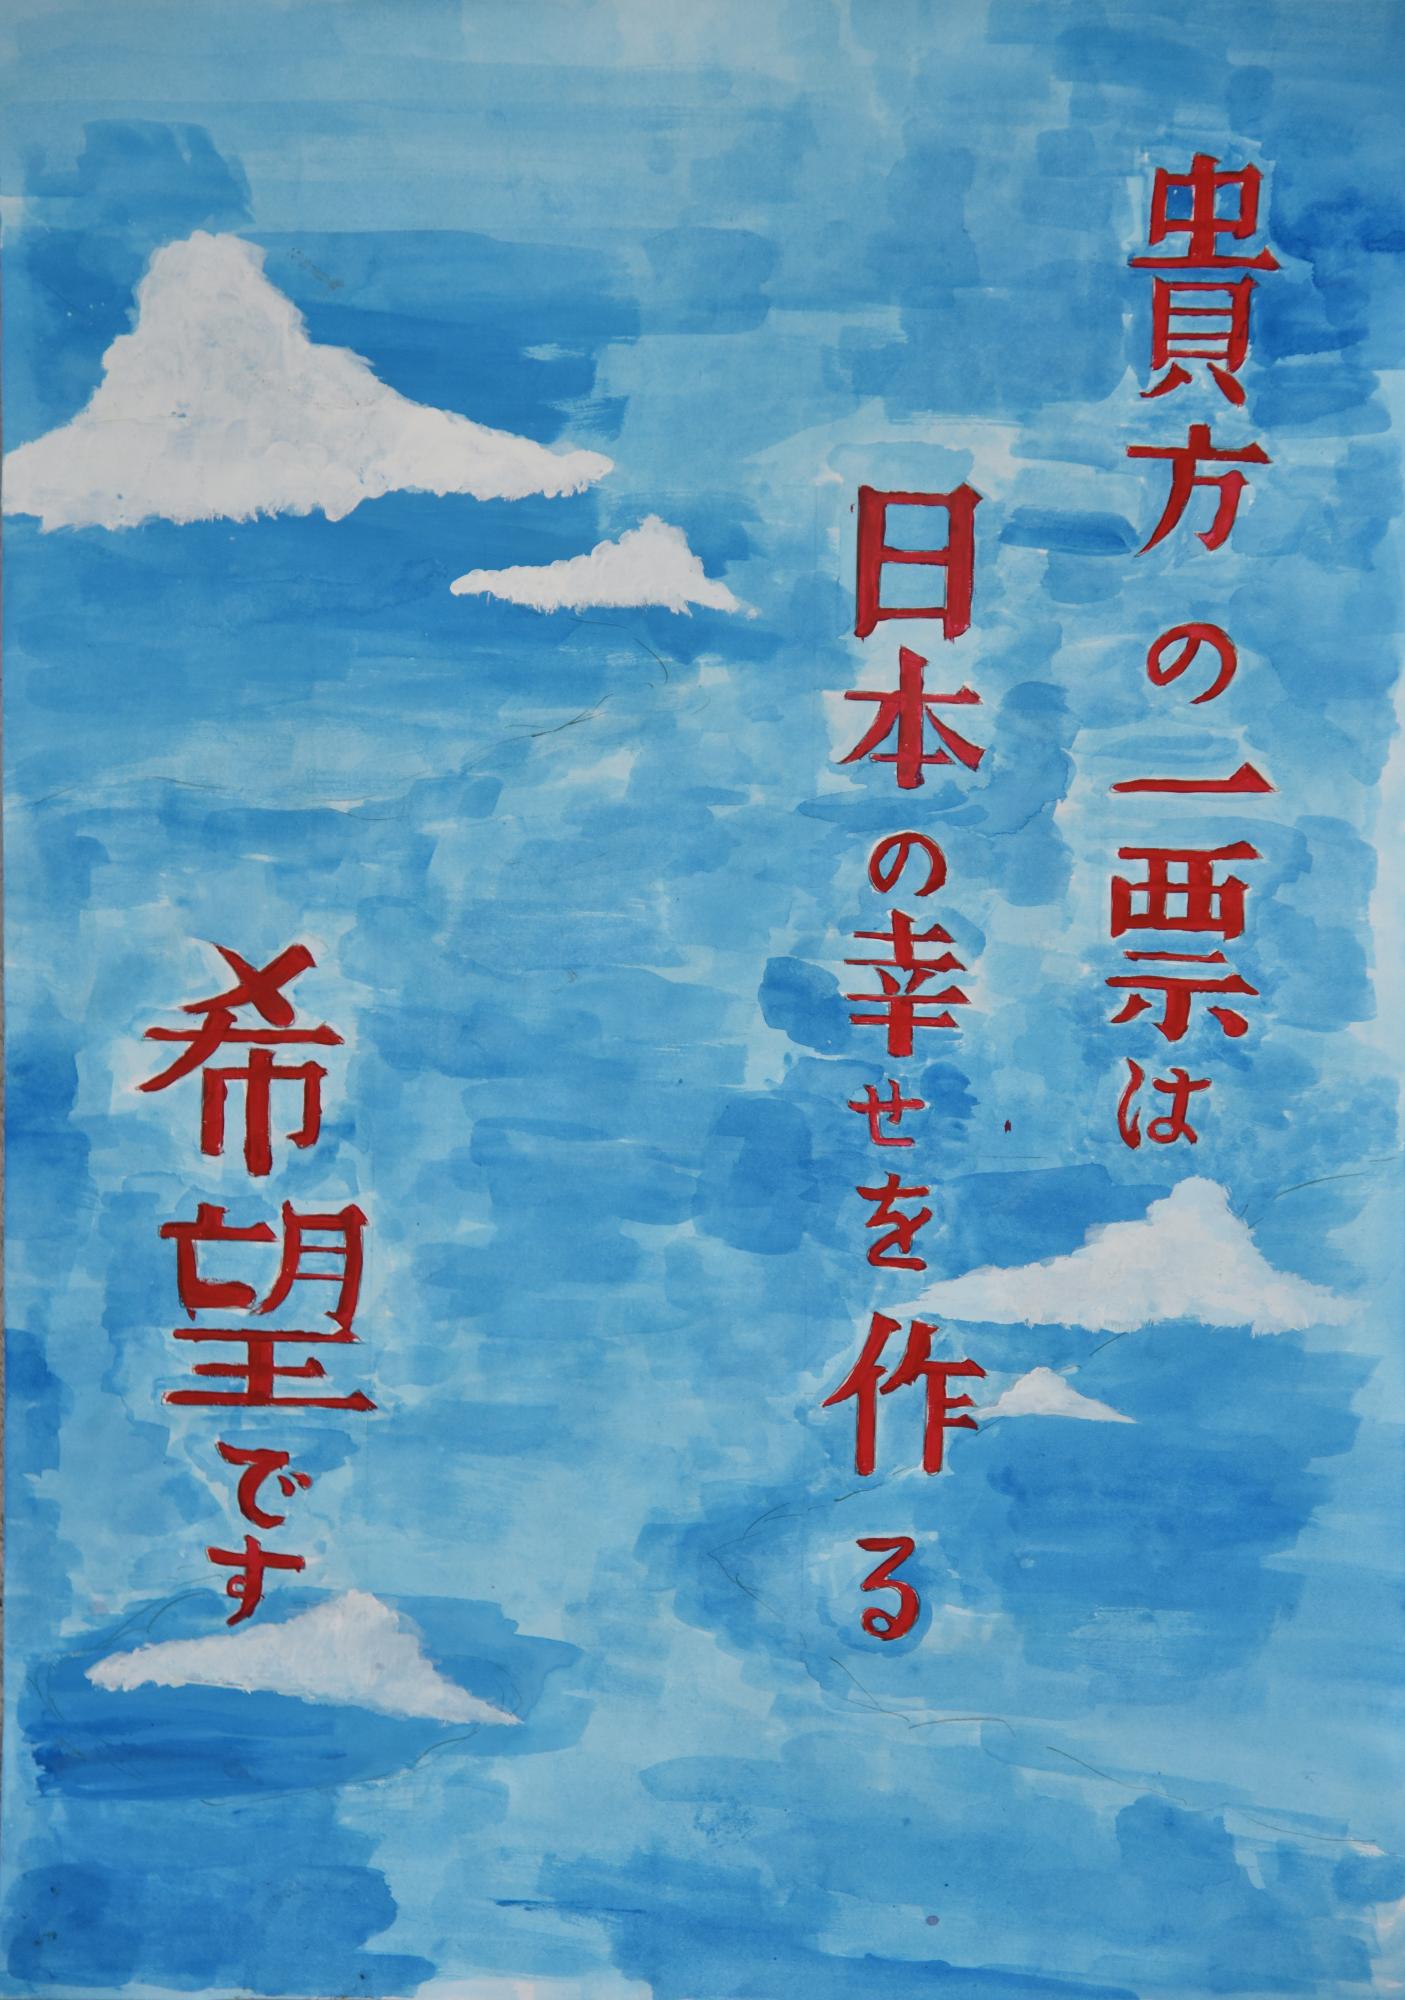 「貴方の一票は日本の幸せを作る希望です」空を背景に文章が描かれているポスター